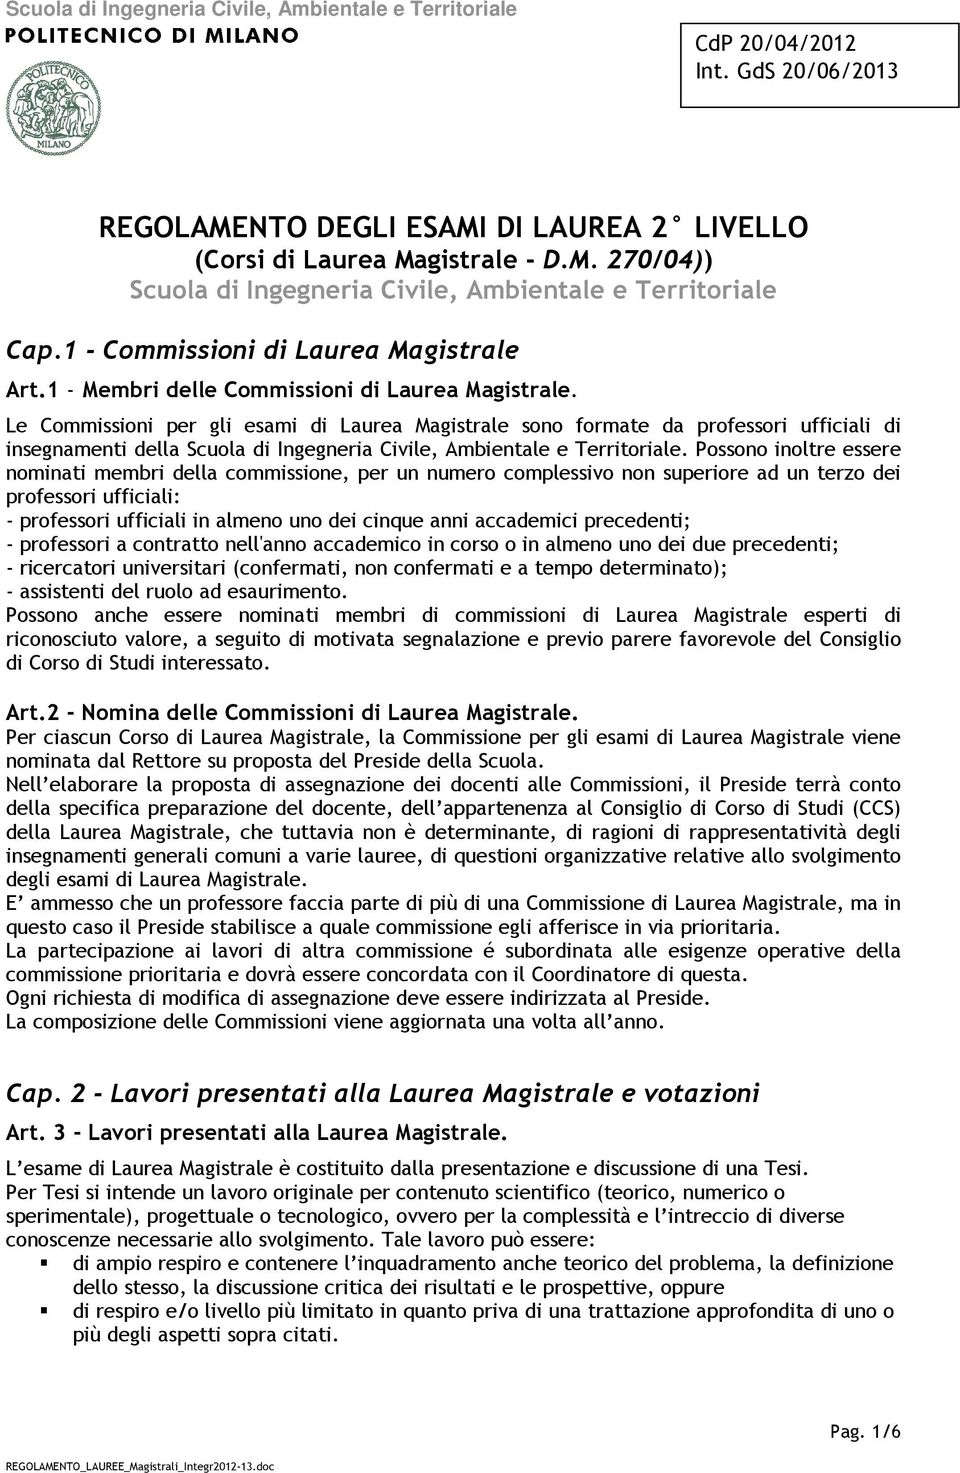 Le Commissioni per gli esami di Laurea Magistrale sono formate da professori ufficiali di insegnamenti della Scuola di Ingegneria Civile, Ambientale e Territoriale.